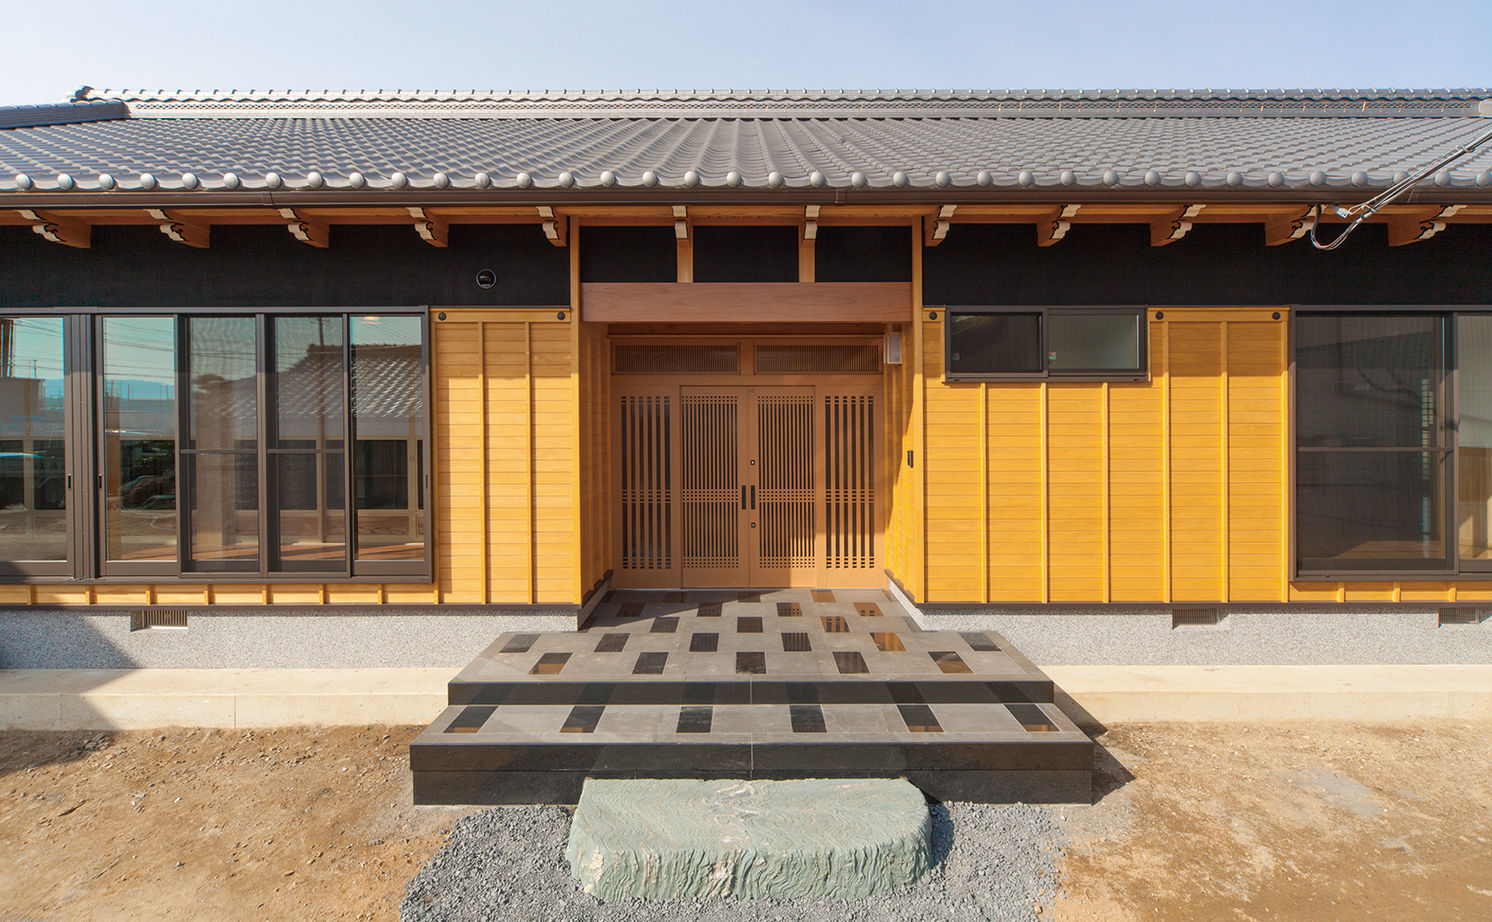 Suumo 日本建築の文化と伝統を継承し 末永く住むほど味わいが出る 頑丈な無垢木材で建てた平屋の家 千葉建設 の建築実例詳細 注文住宅